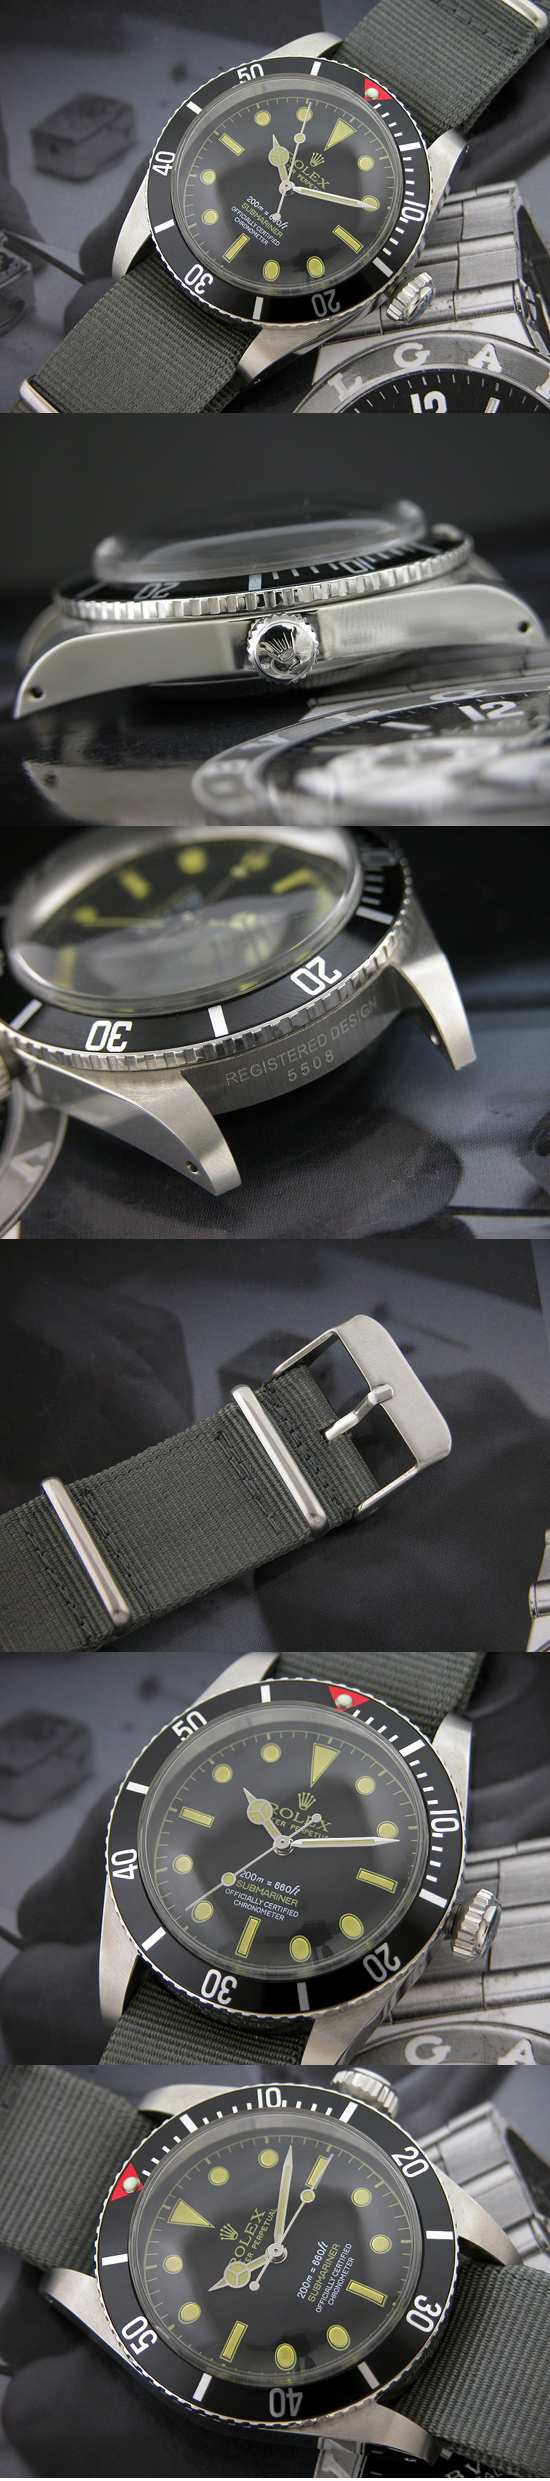 おしゃれなブランド時計がロレックス-サブマリーナ-ROLEX-16610-36-男性用を提供します.